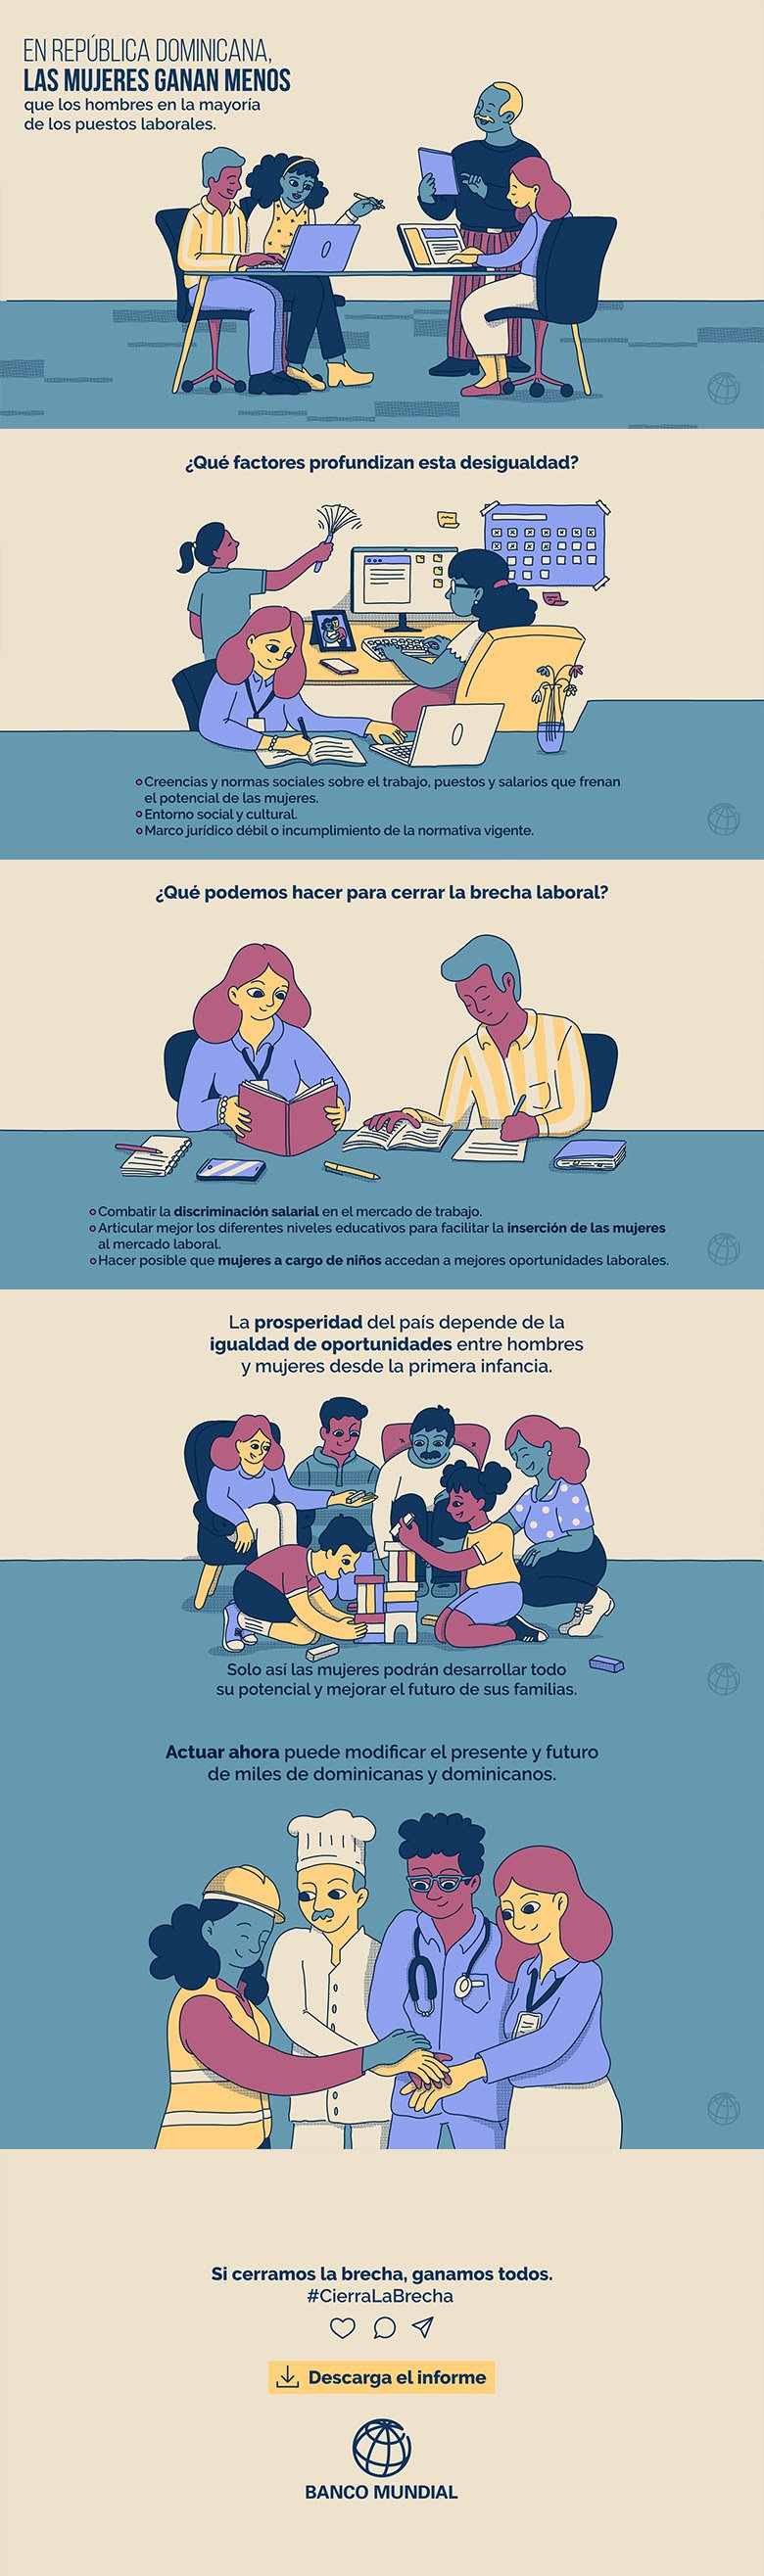 Infografía Género República Dominicana - Brecha salarial